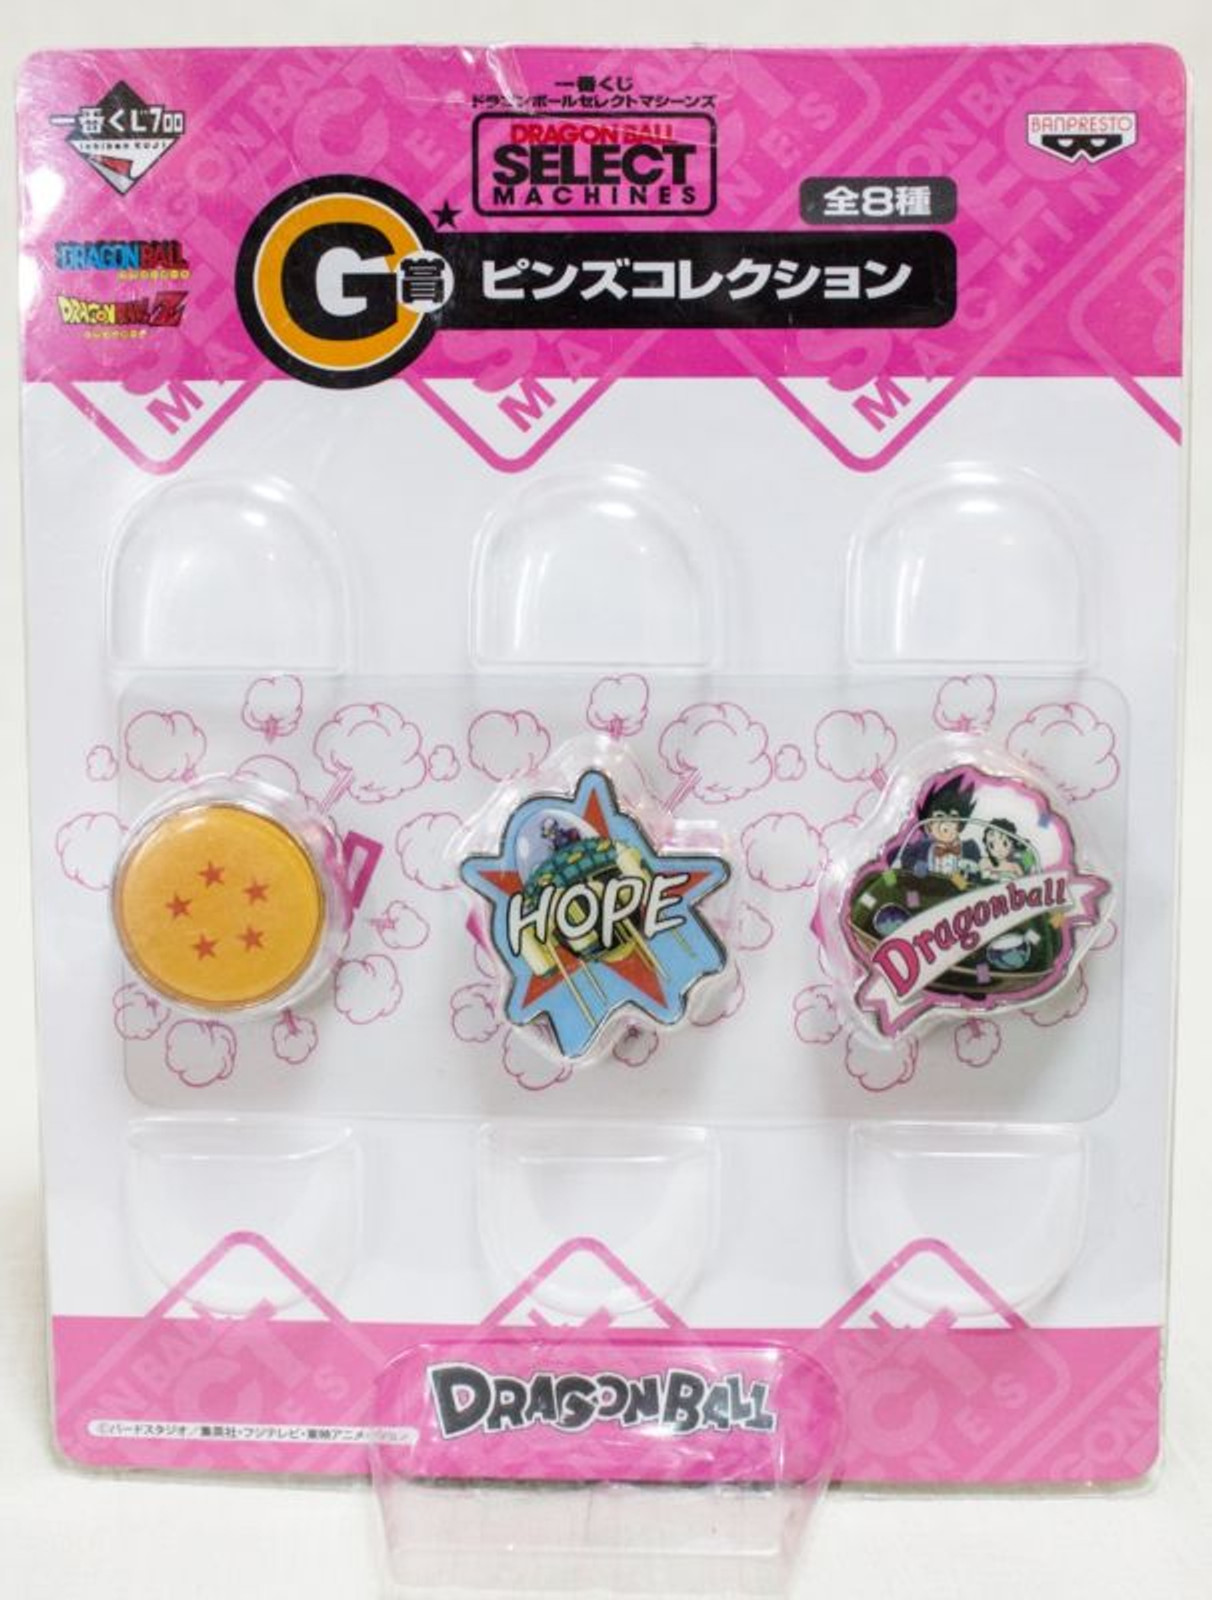 Dragon Ball Z Select Machines Prize G Pins Banpresto 5 JAPAN ANIME MANGA